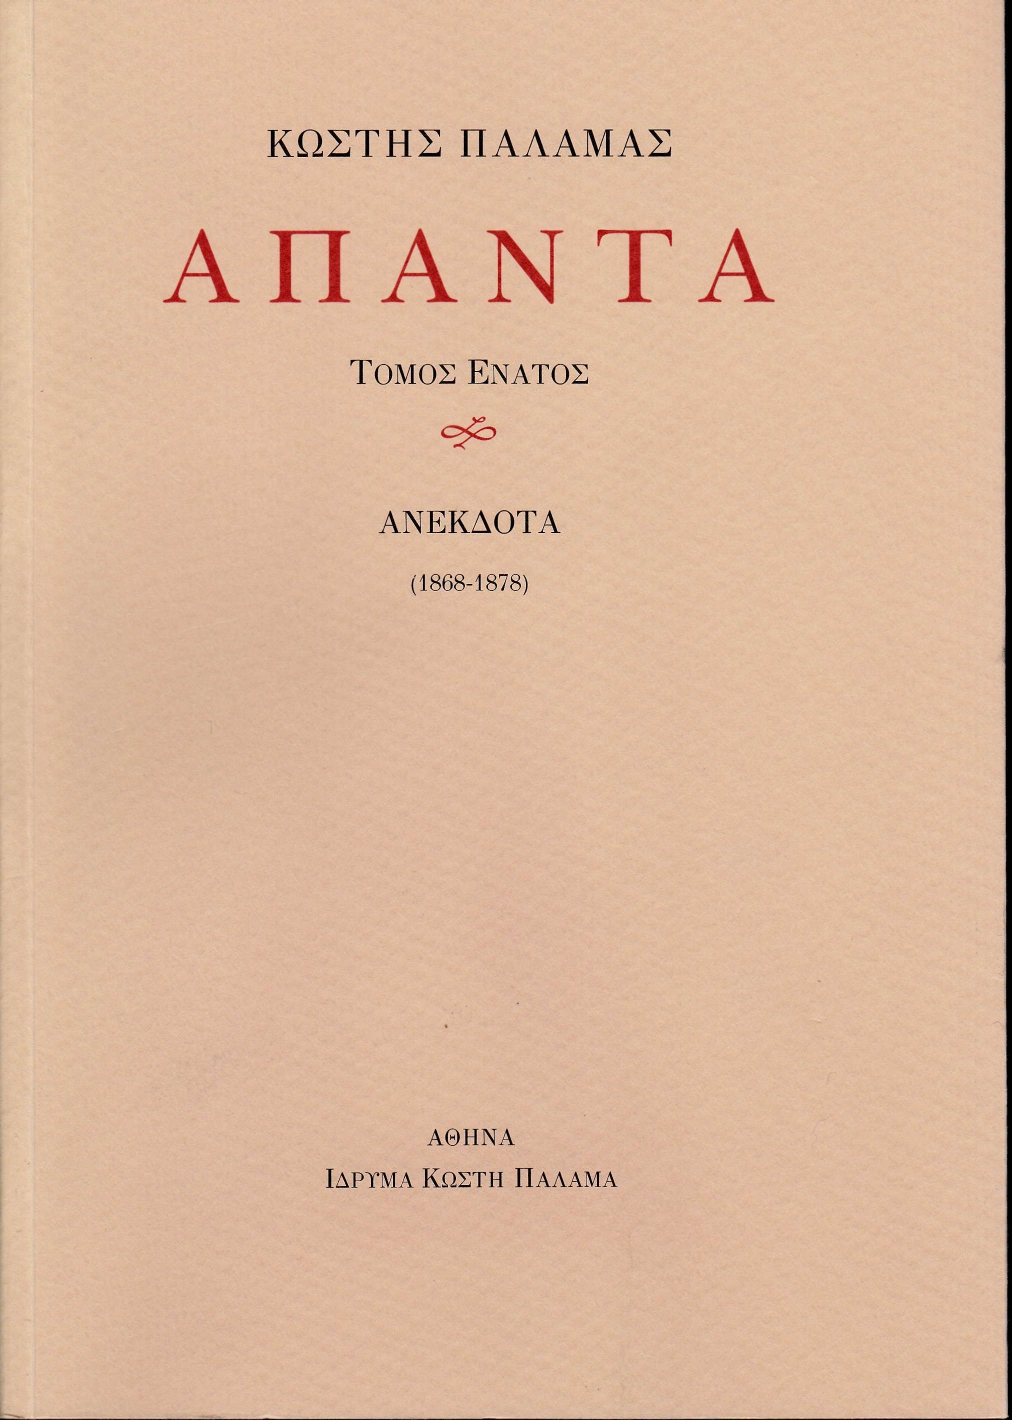 2019, Κασίνης, Κωνσταντίνος Γ. (Kasinis, K. G.), Άπαντα IX, Ανέκδοτα (1868-1878), Παλαμάς, Κωστής, 1859-1943, Ίδρυμα Κωστή Παλαμά